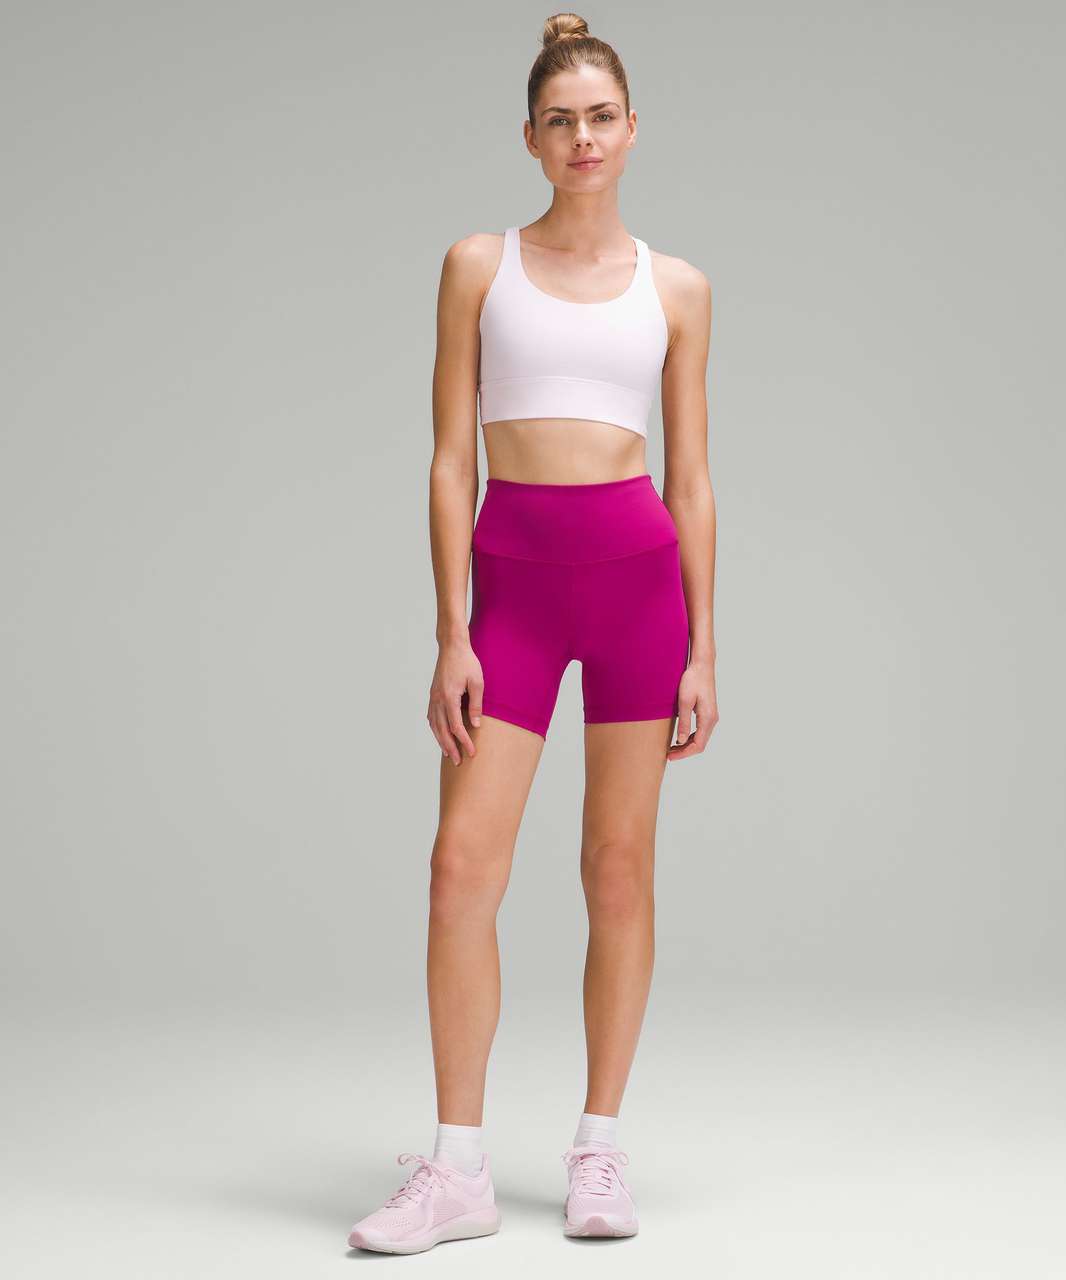 lululemon athletica, Intimates & Sleepwear, Lululemon Athletica Pink Train  Bra Size With Padding